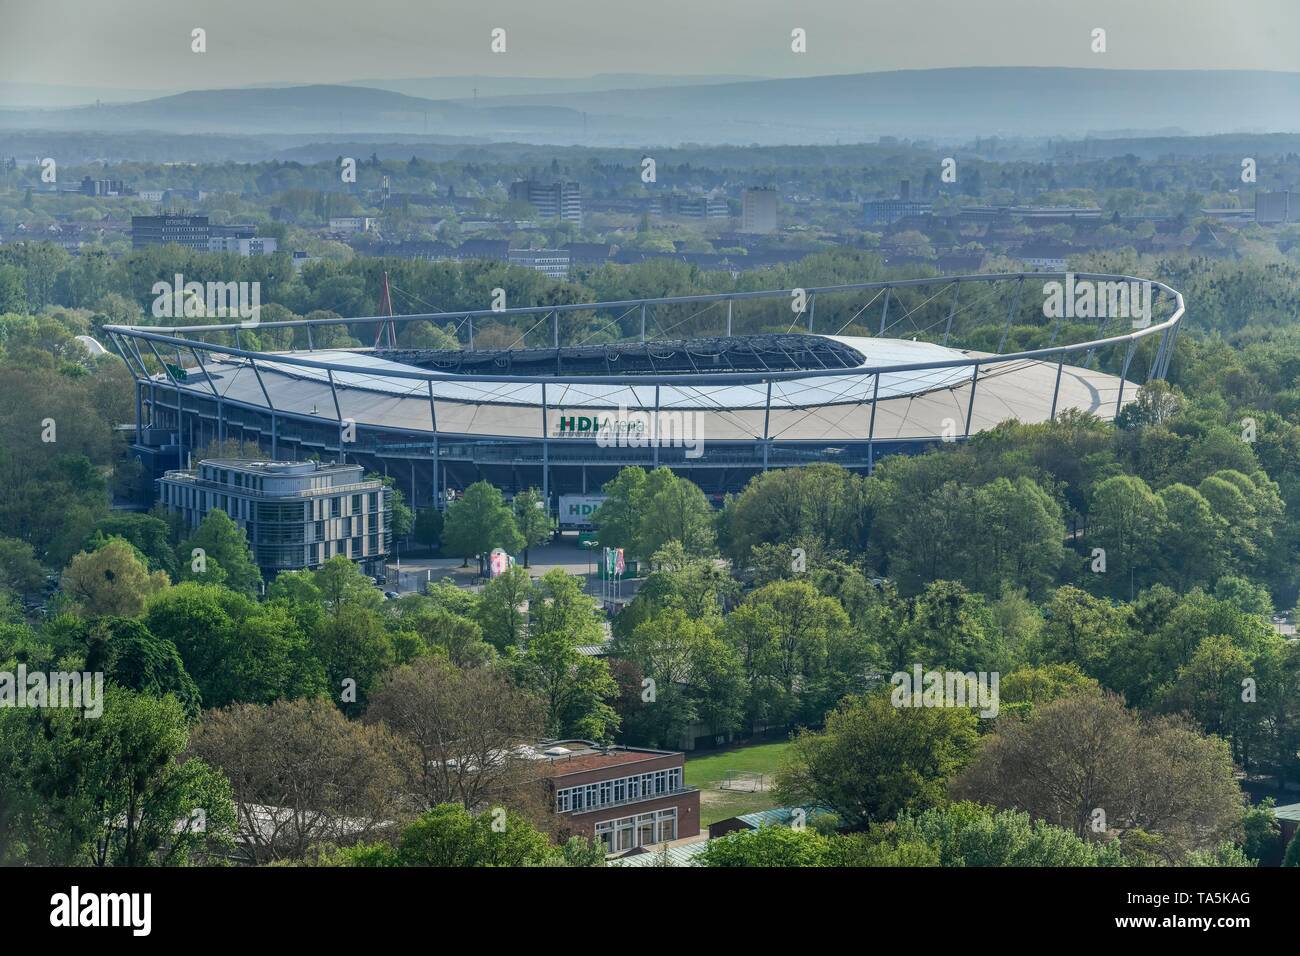 Football stadium HDI arena, Hannover, Lower Saxony, Germany, Fußballstadion HDI-Arena, Niedersachsen, Deutschland Stock Photo